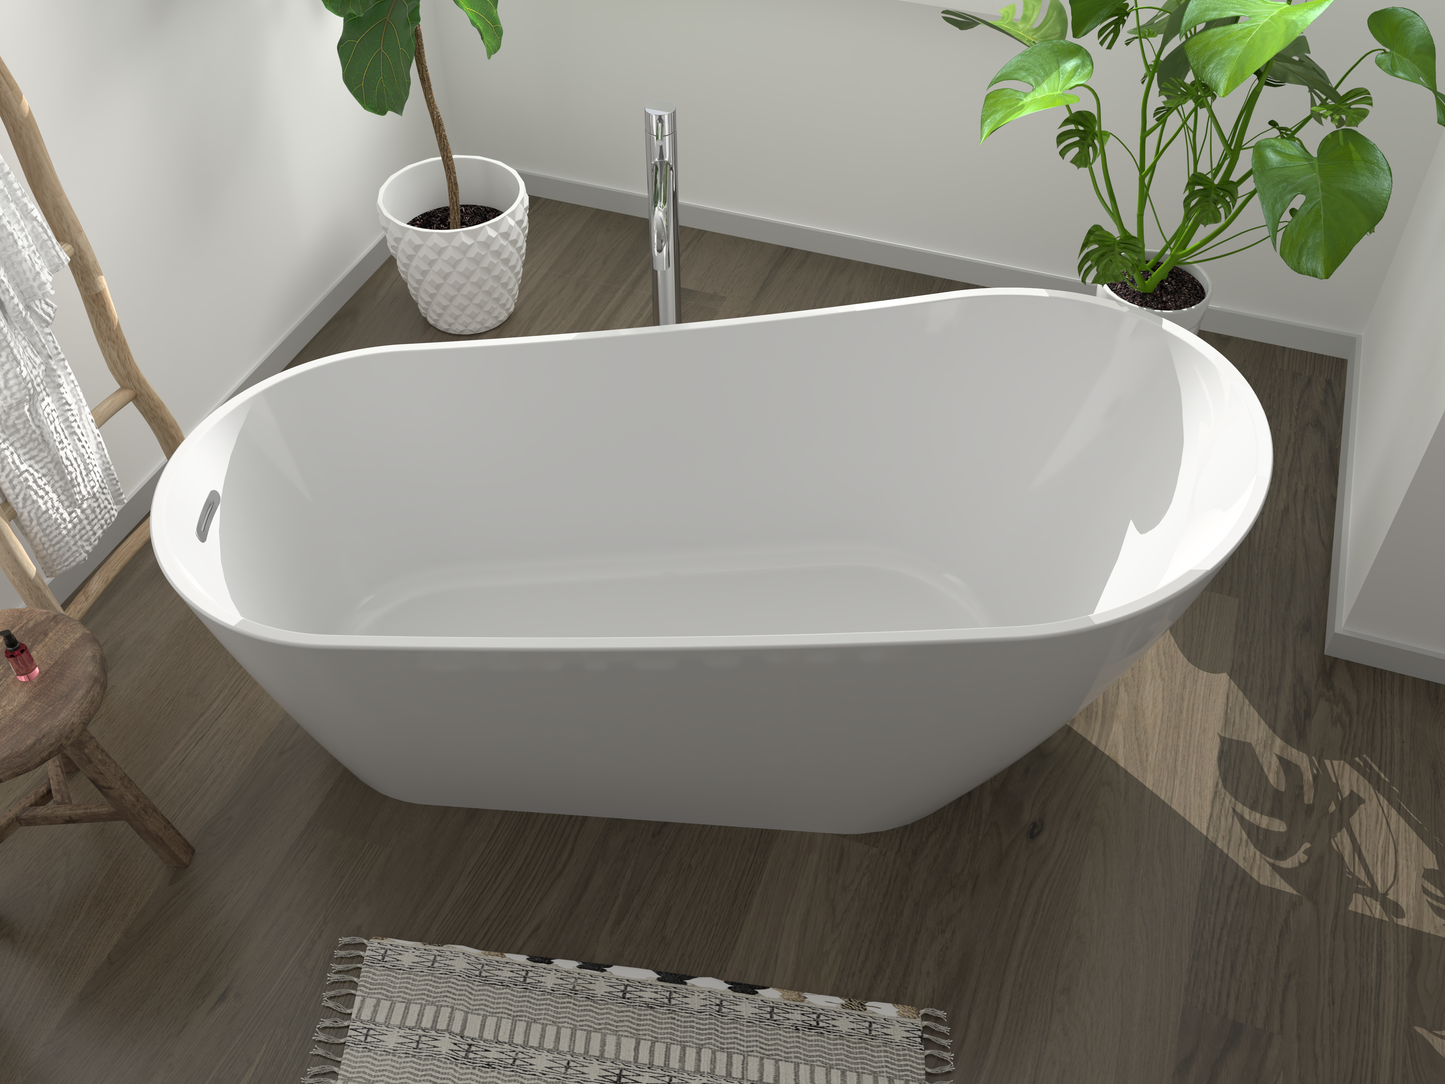 Freistehende Badewanne VITO - Acryl weiß glänzend, Länge 1700mm